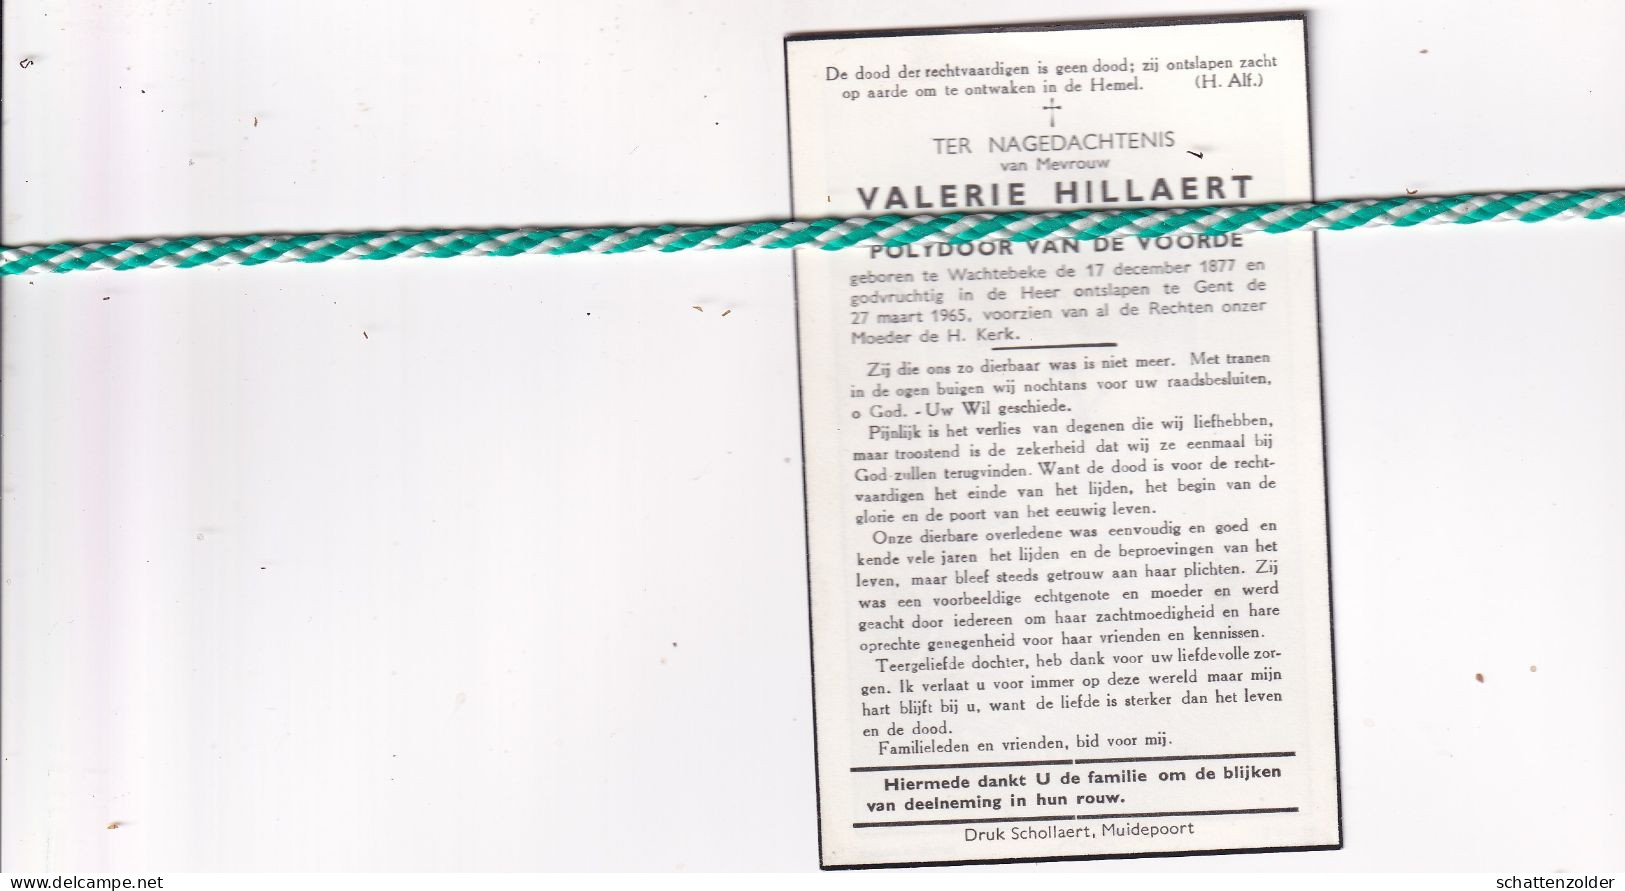 Valerie Hillaert-Van De Voorde, Wachtebeke 1877, Gent 1965 - Esquela